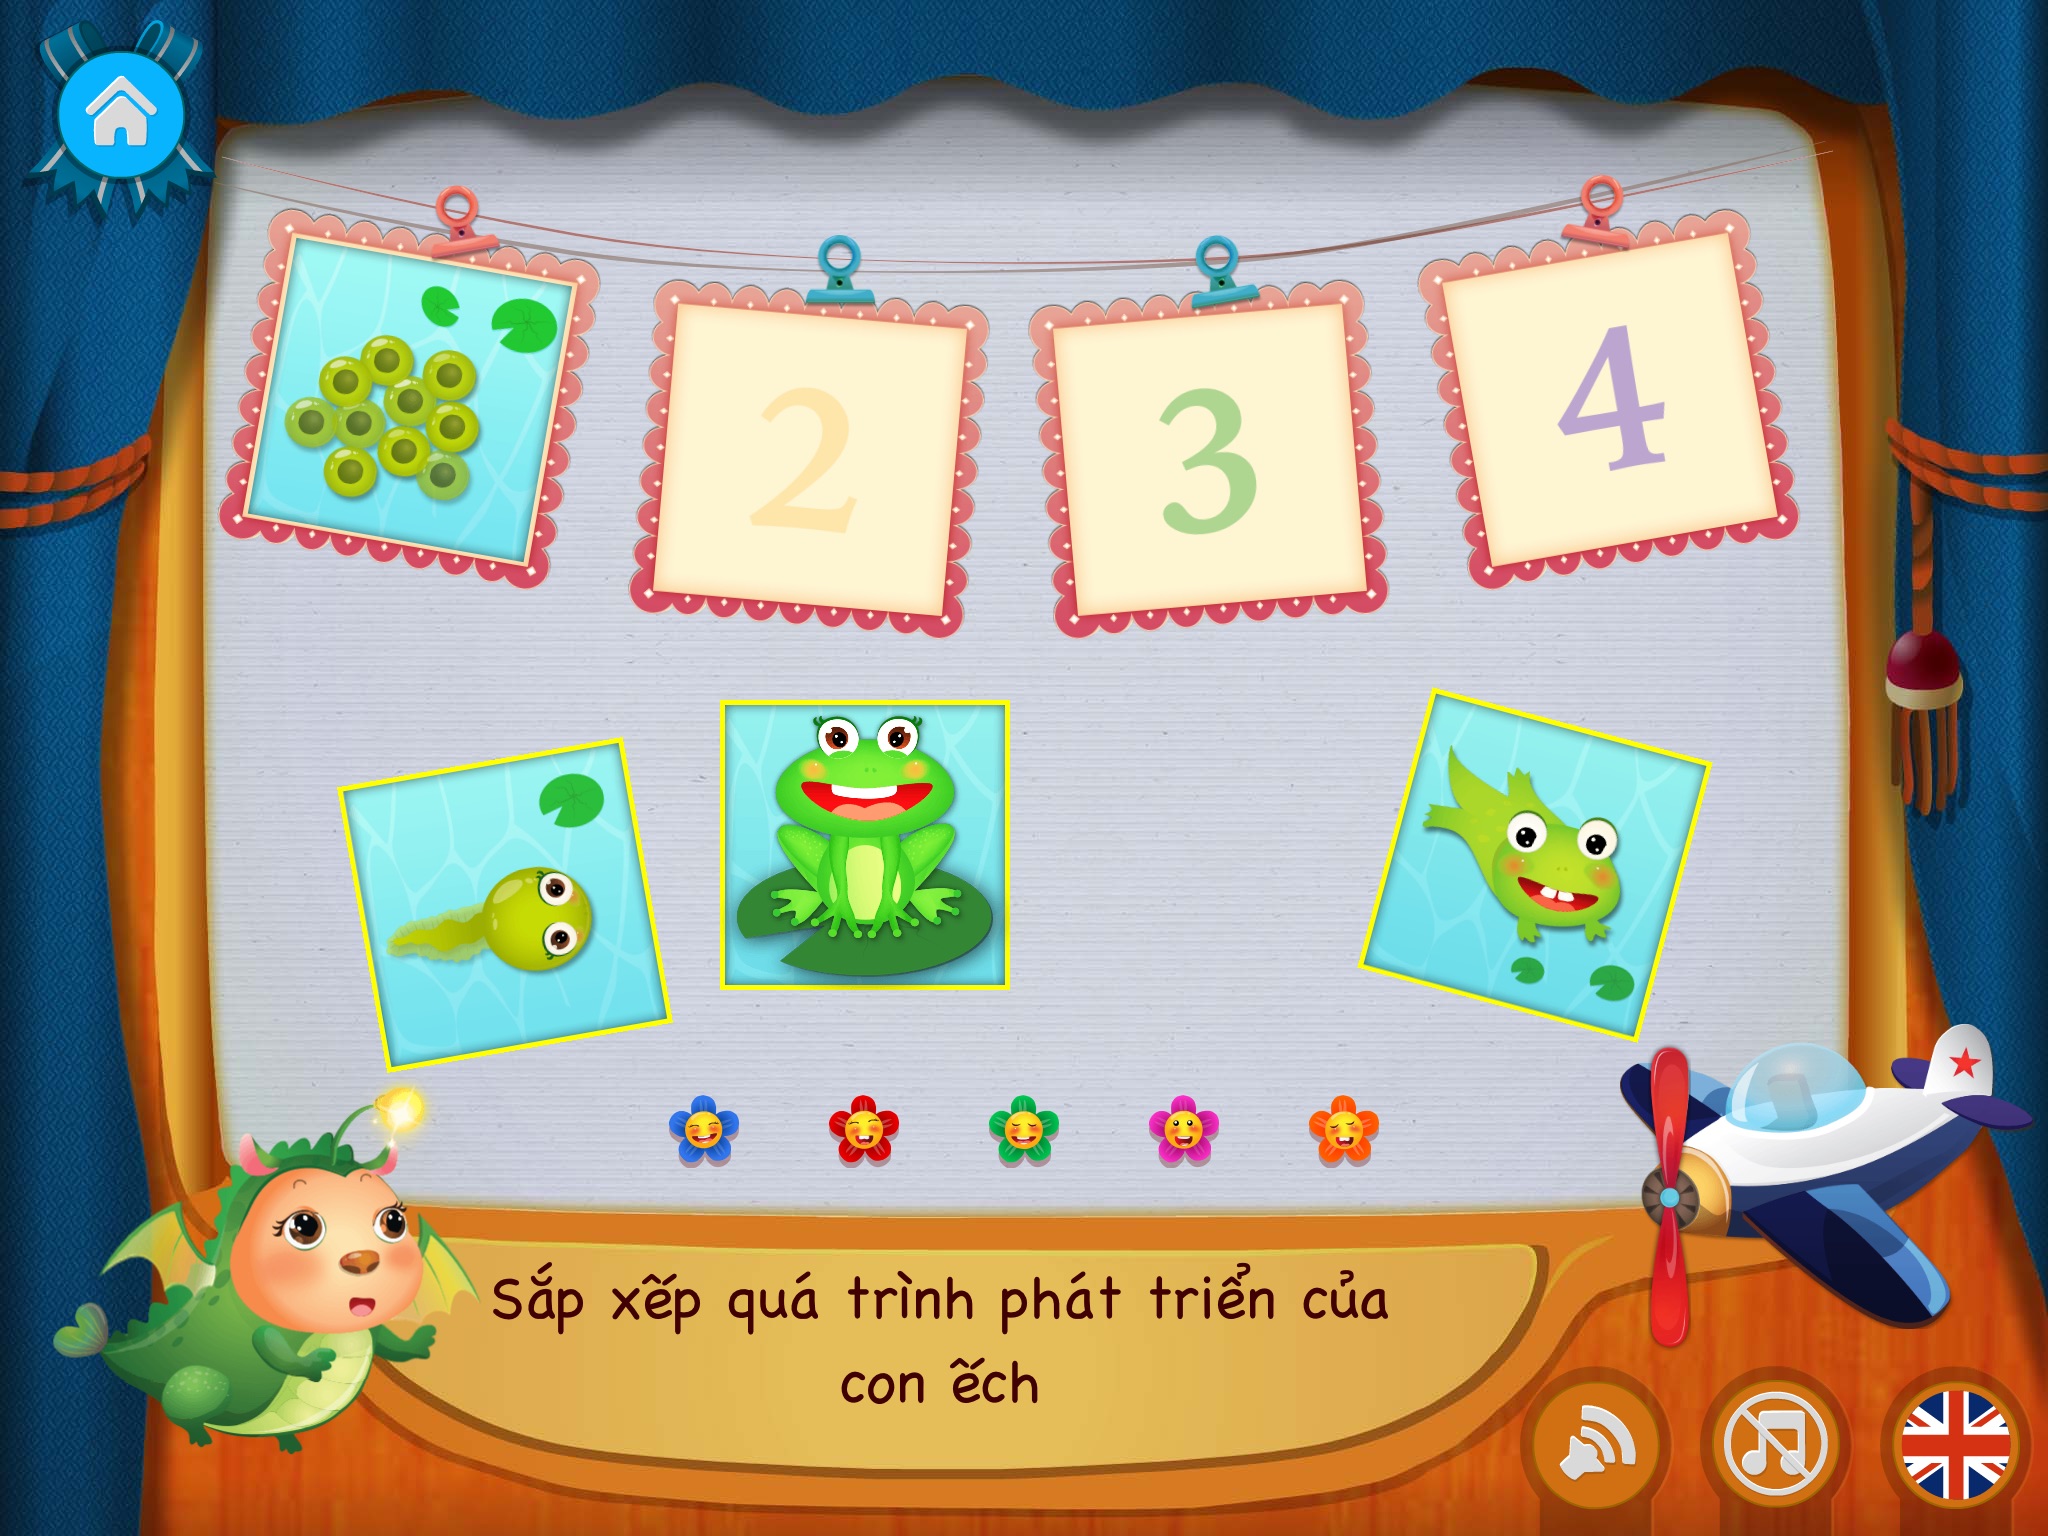 Bé thông minh - Từ điển hình ảnh, bảng chữ cái, số đếm, tiếng Anh & tro chơi sinh động cho trẻ em screenshot 4